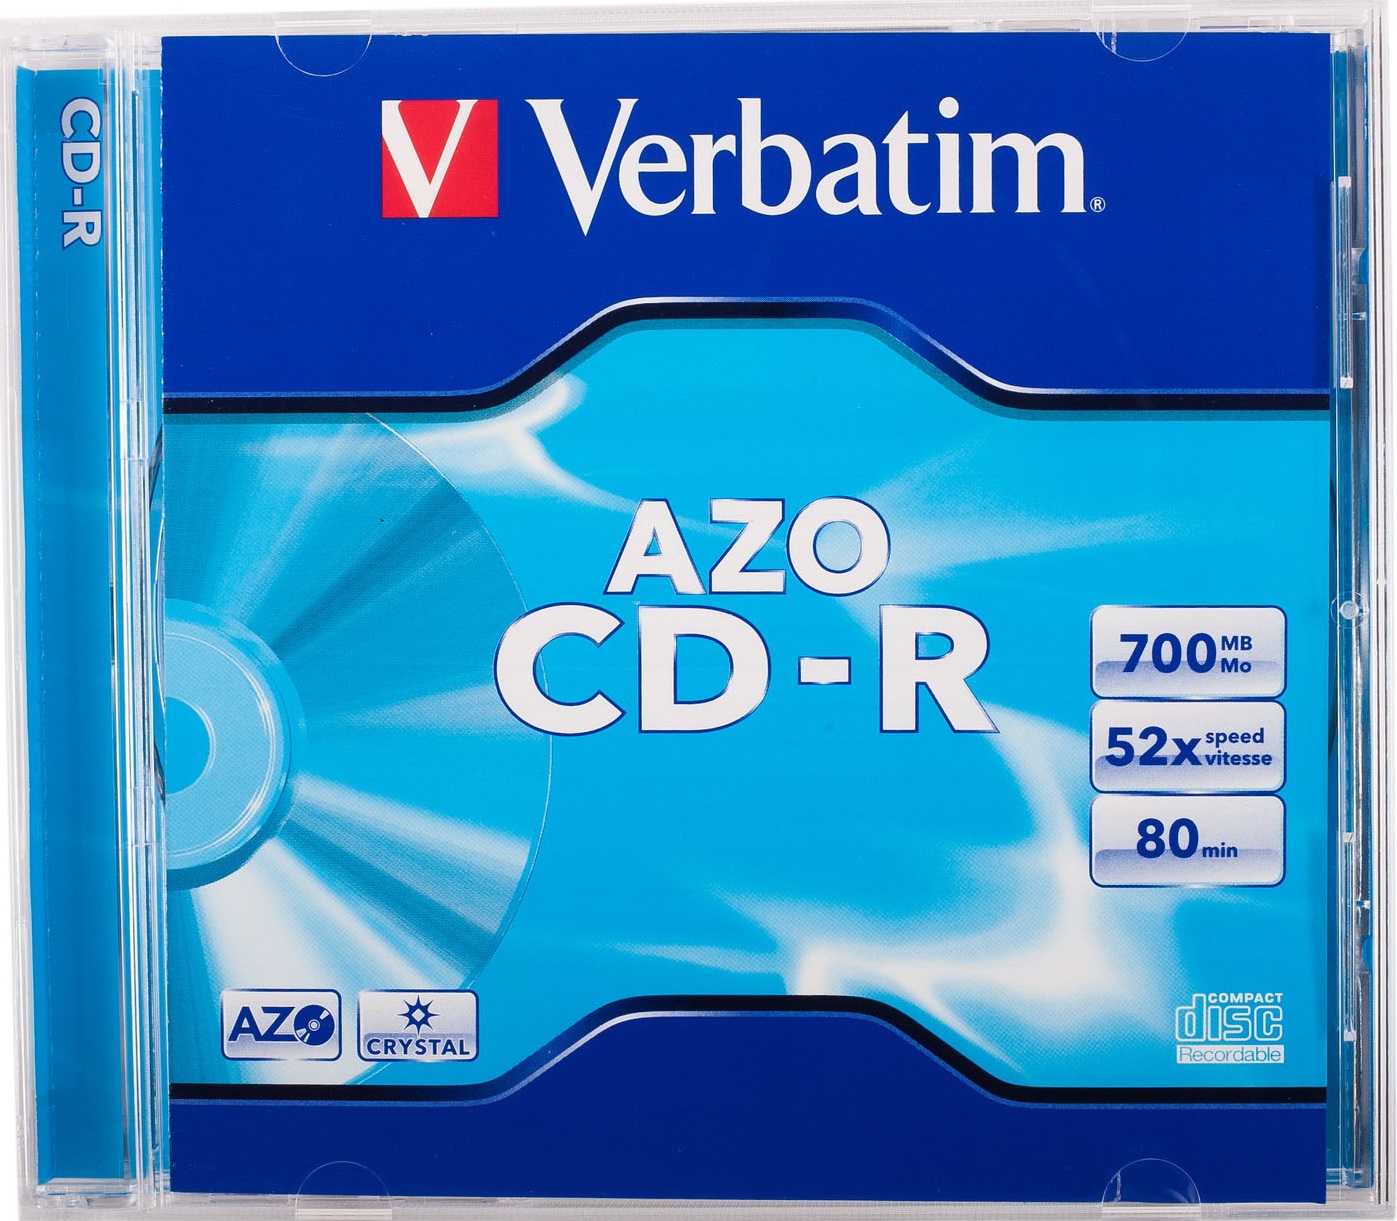 Диск Verbatim CD-R 700Mb 52х AZO Crystal jewel box 80min